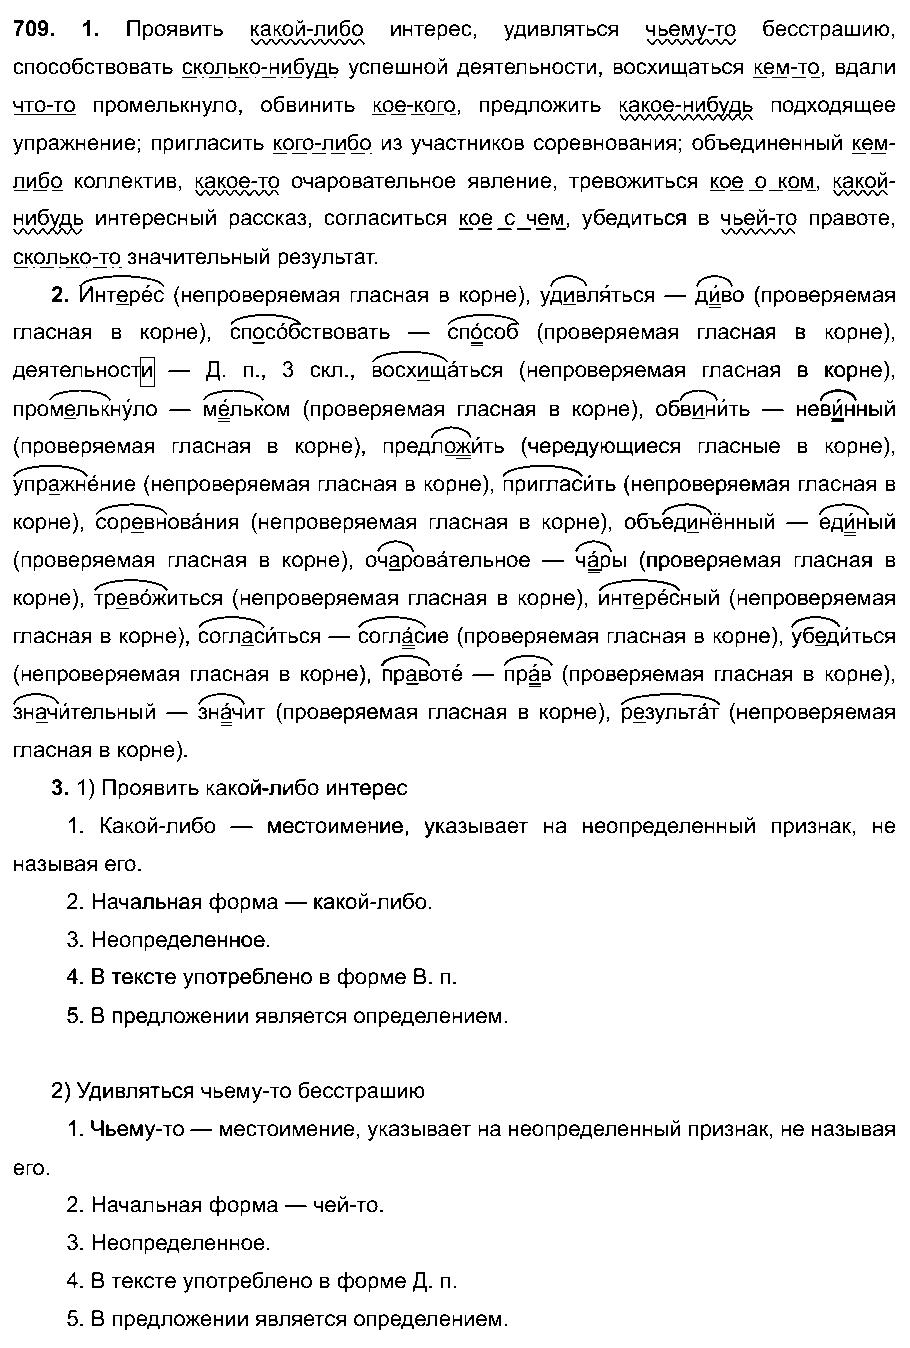 ГДЗ Русский язык 6 класс - 709